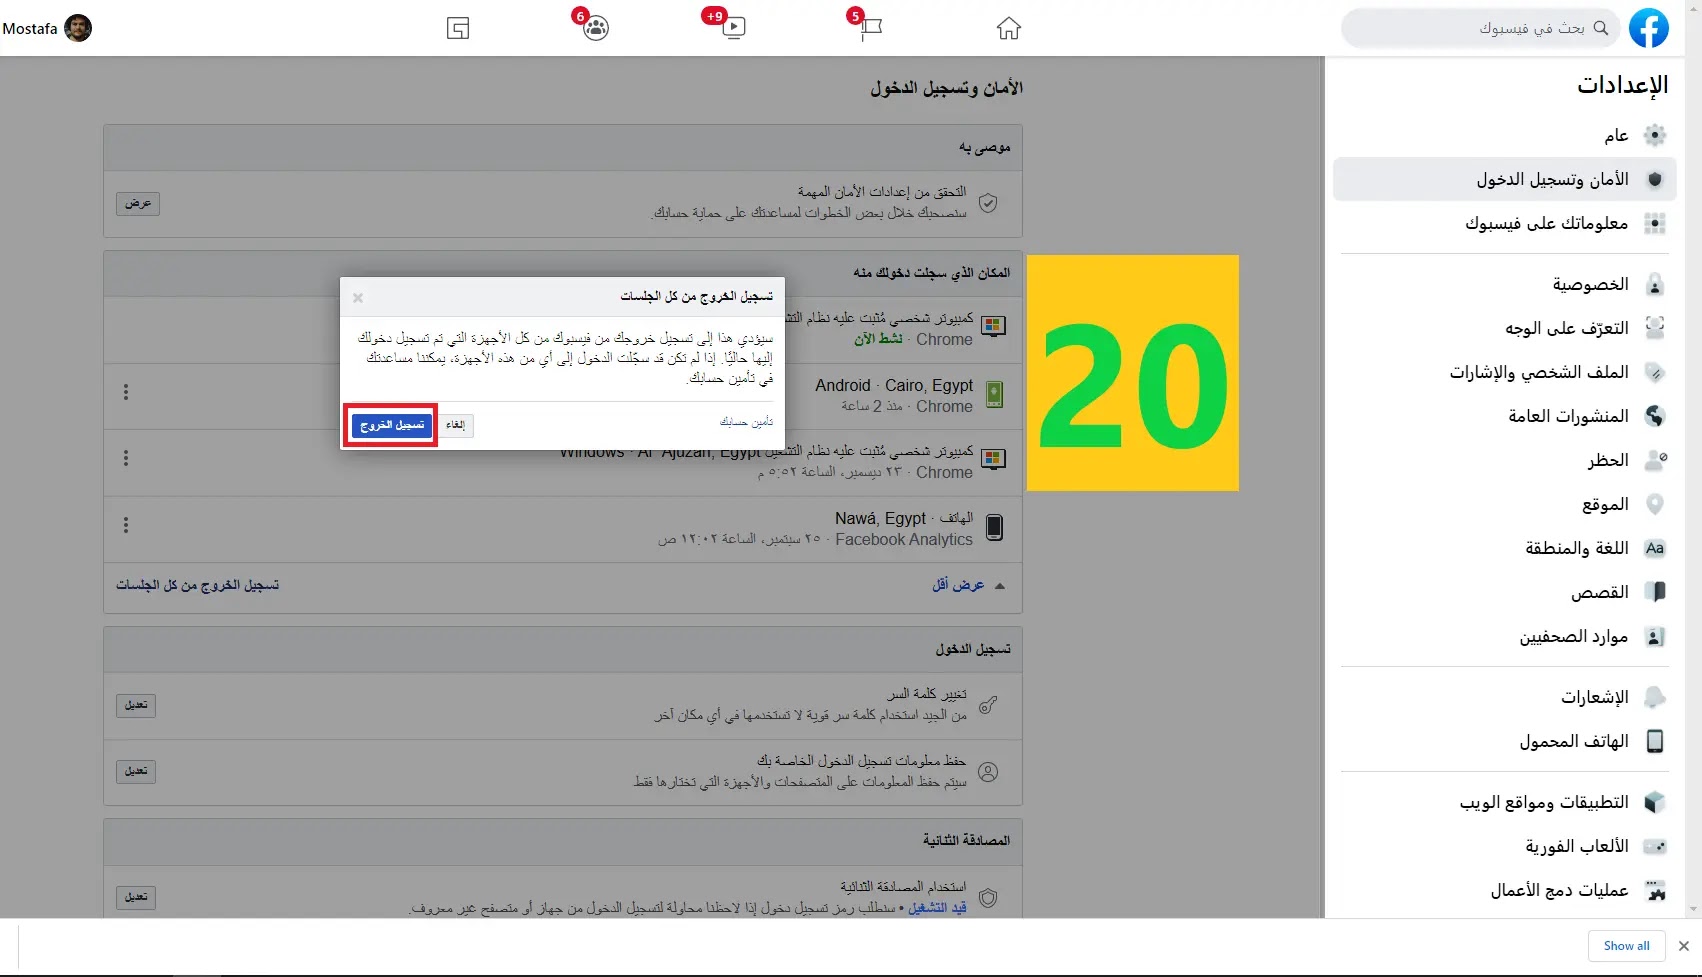 وادي التكنولوجيا | بالعربية: كيفية تسجيل الخروج من جميع الجلسات المفتوحة لحساب الفيسبوك